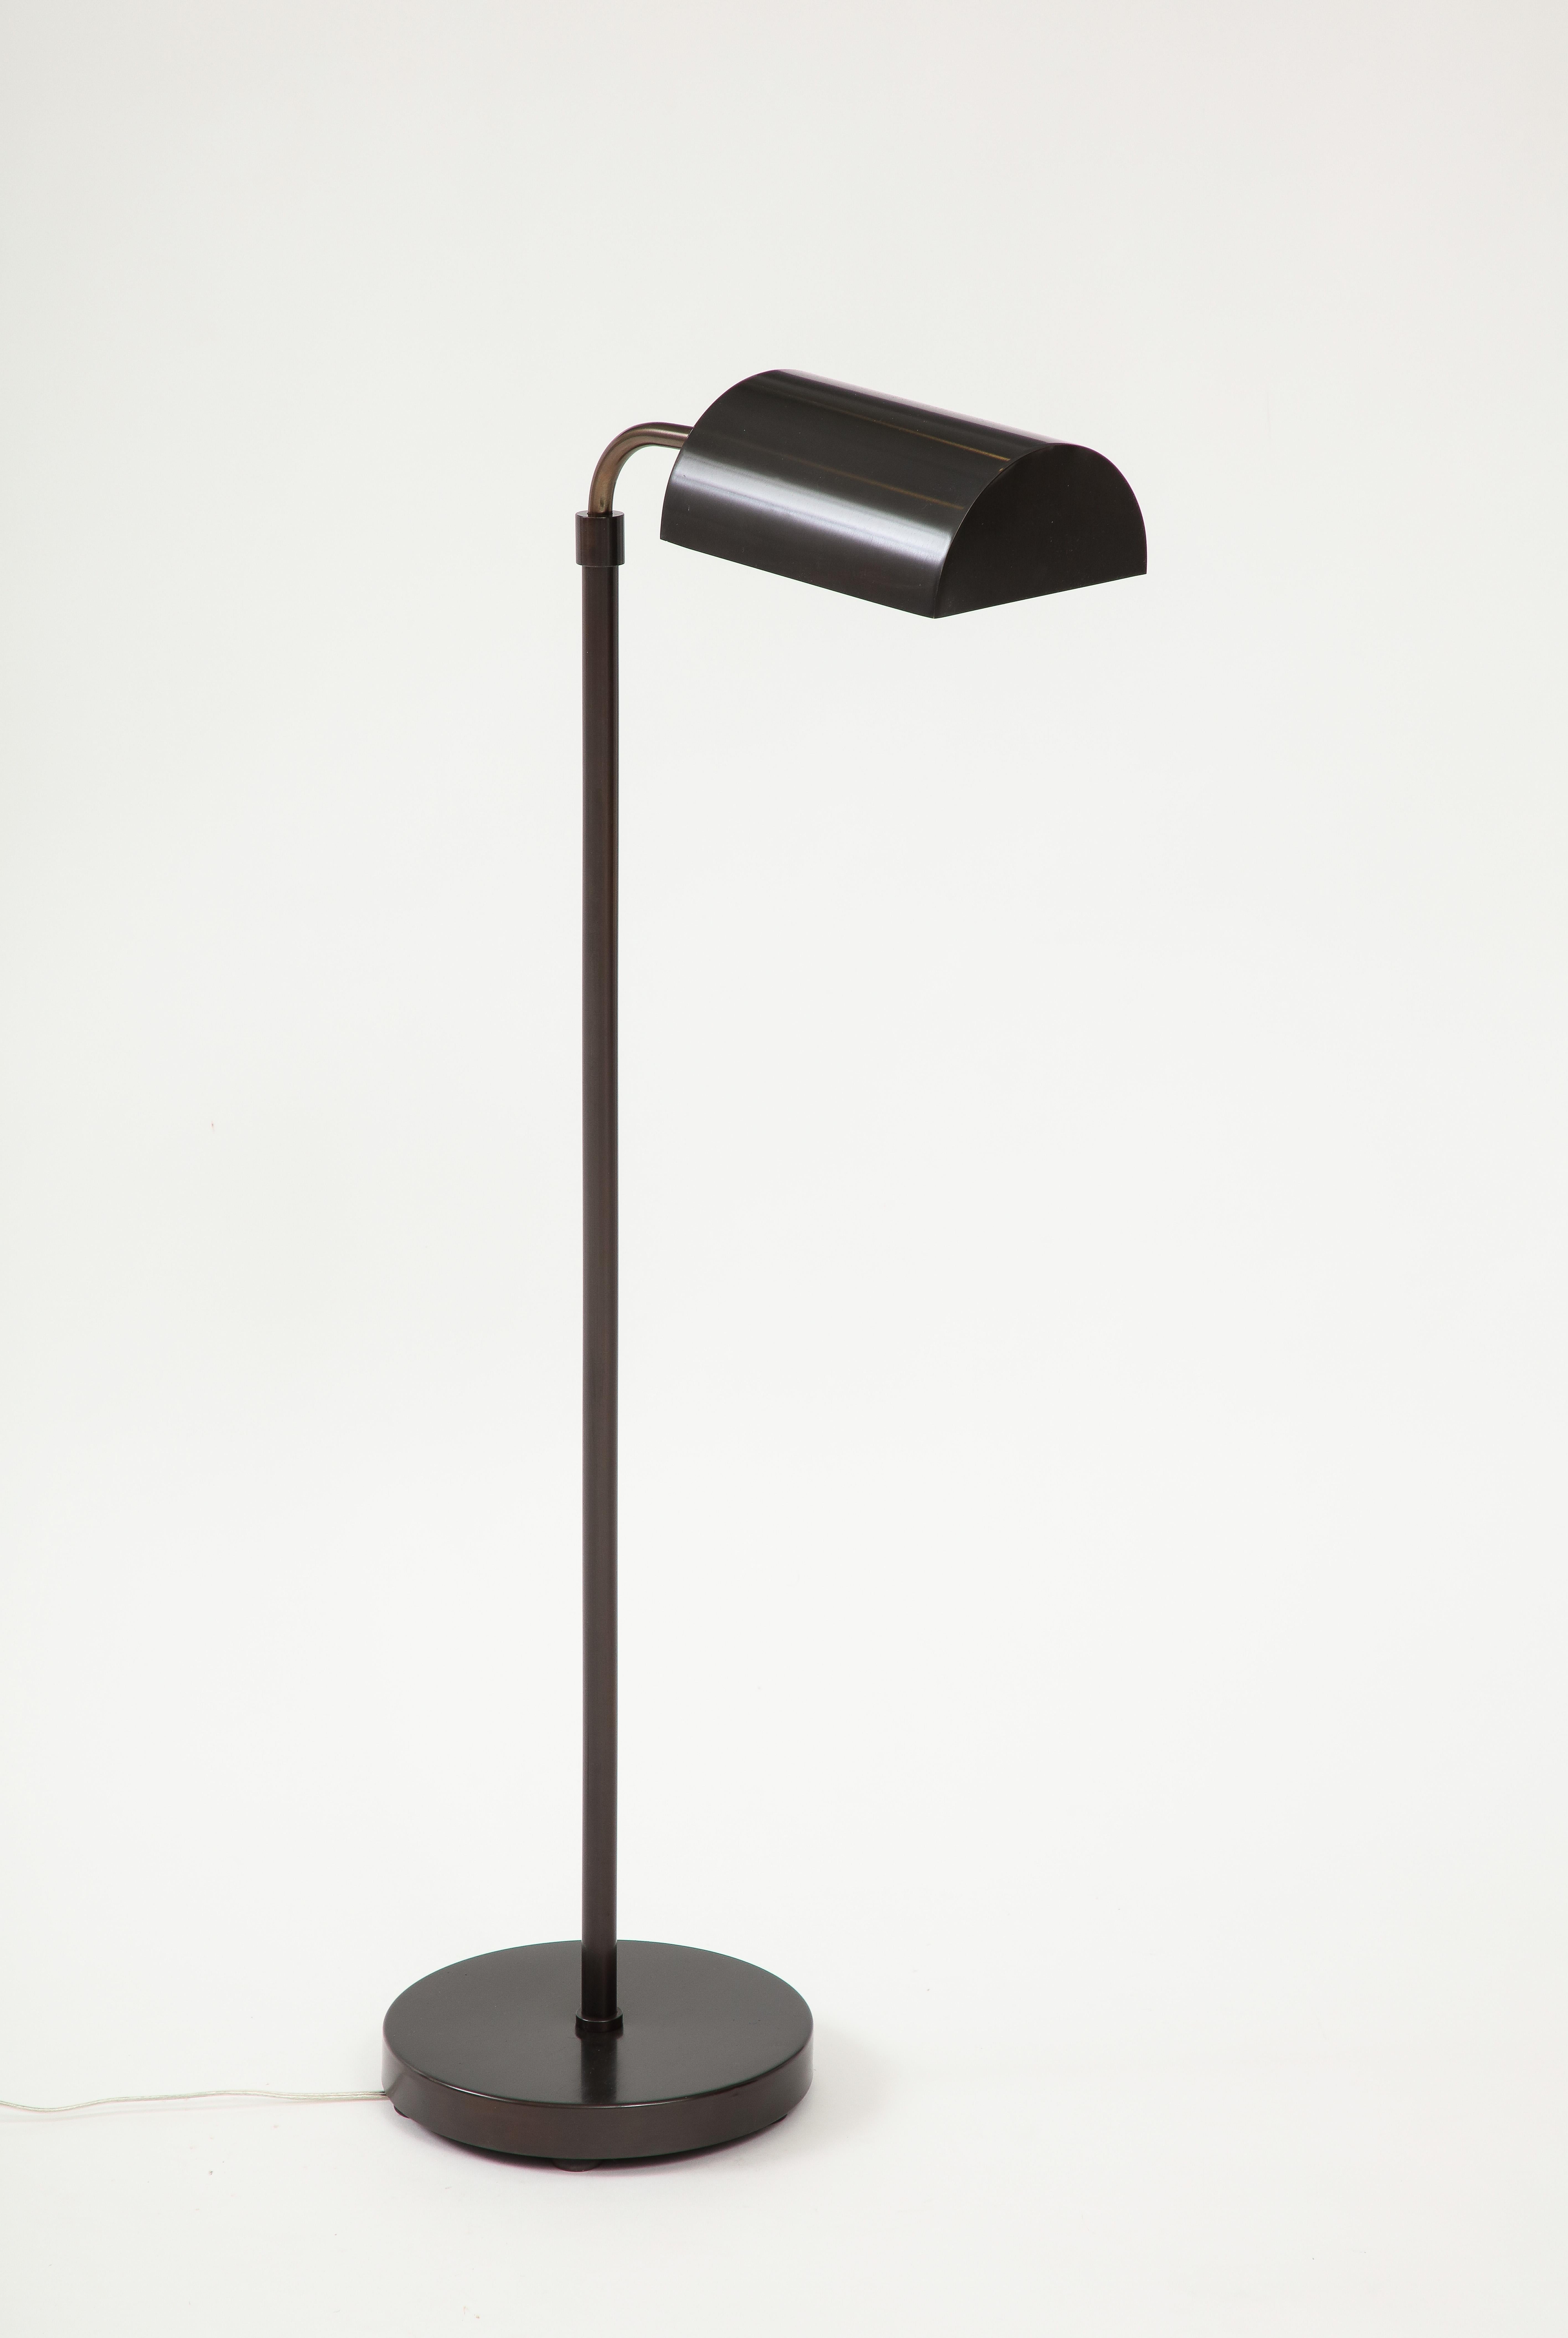 Lampadaire moderniste à hauteur réglable et à tête pivotante en bronze par Koch & Lowy, années 70. Recâblé pour une utilisation aux États-Unis.